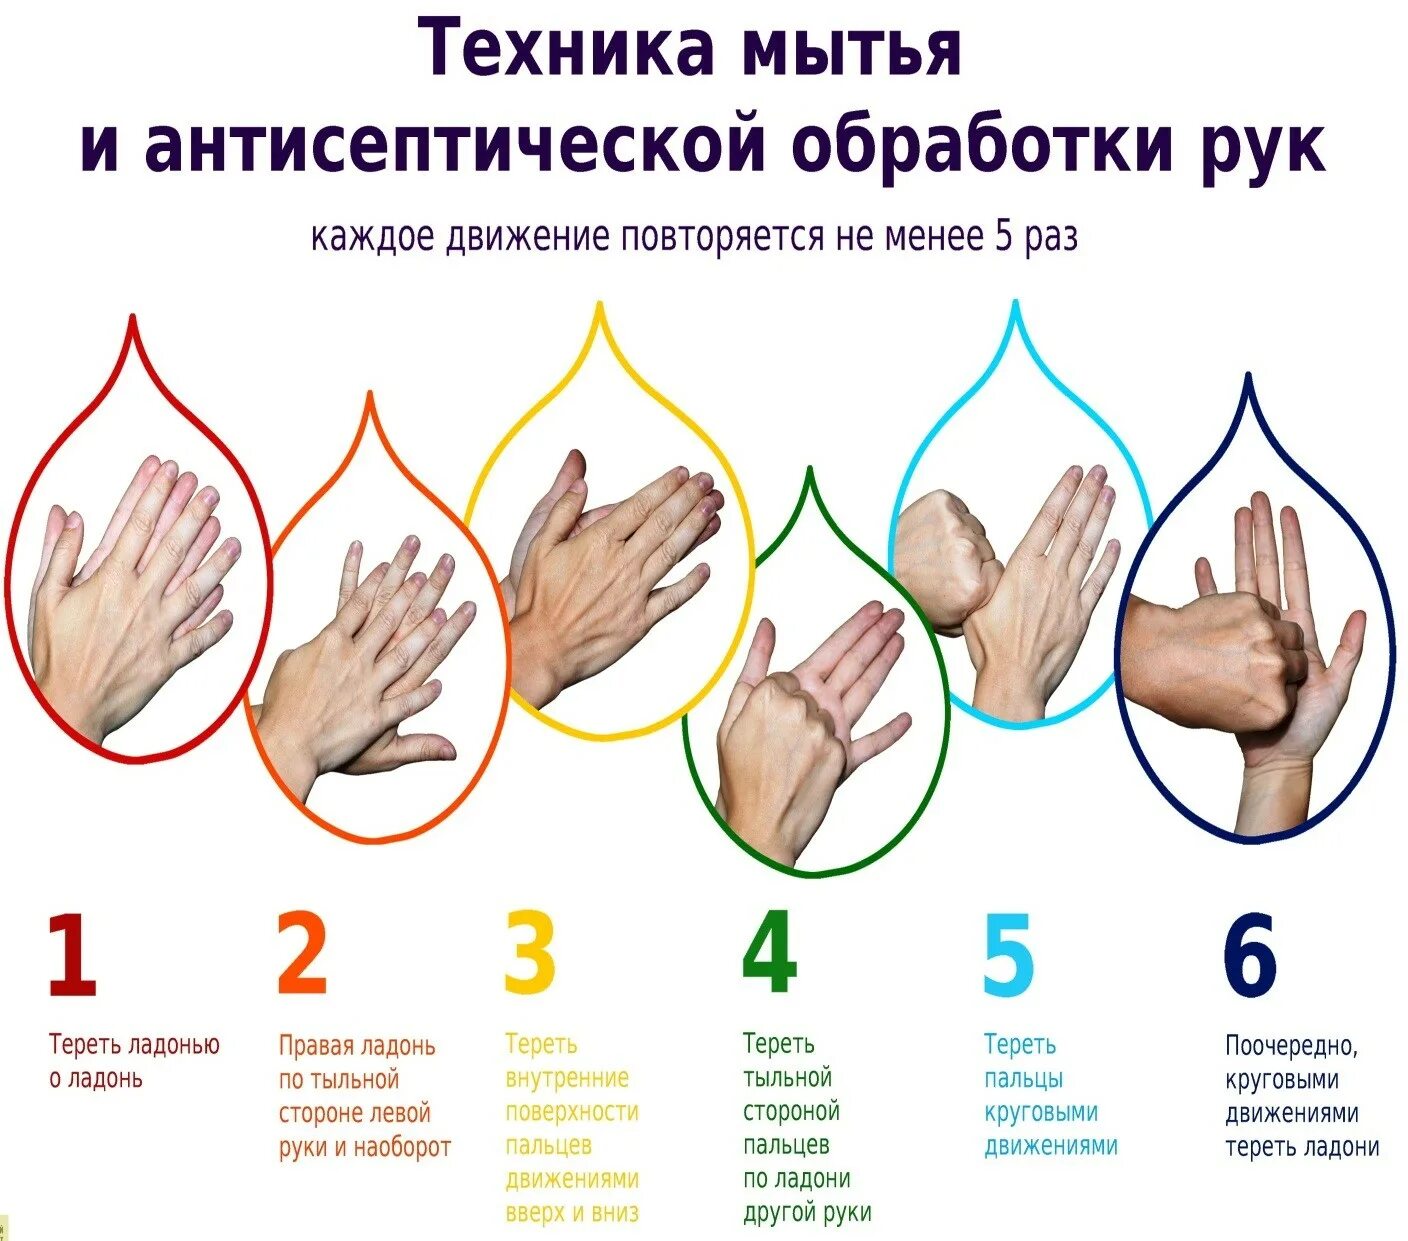 Во время мытья рук необходимо ответ гигтест. Обработка рук гигиеническим способом. Гигиеническая обработка рук антисептиком медперсонала. Гигиеническая обработка рук кожным антисептиком проводится. Гигиенический метод мытья рук.